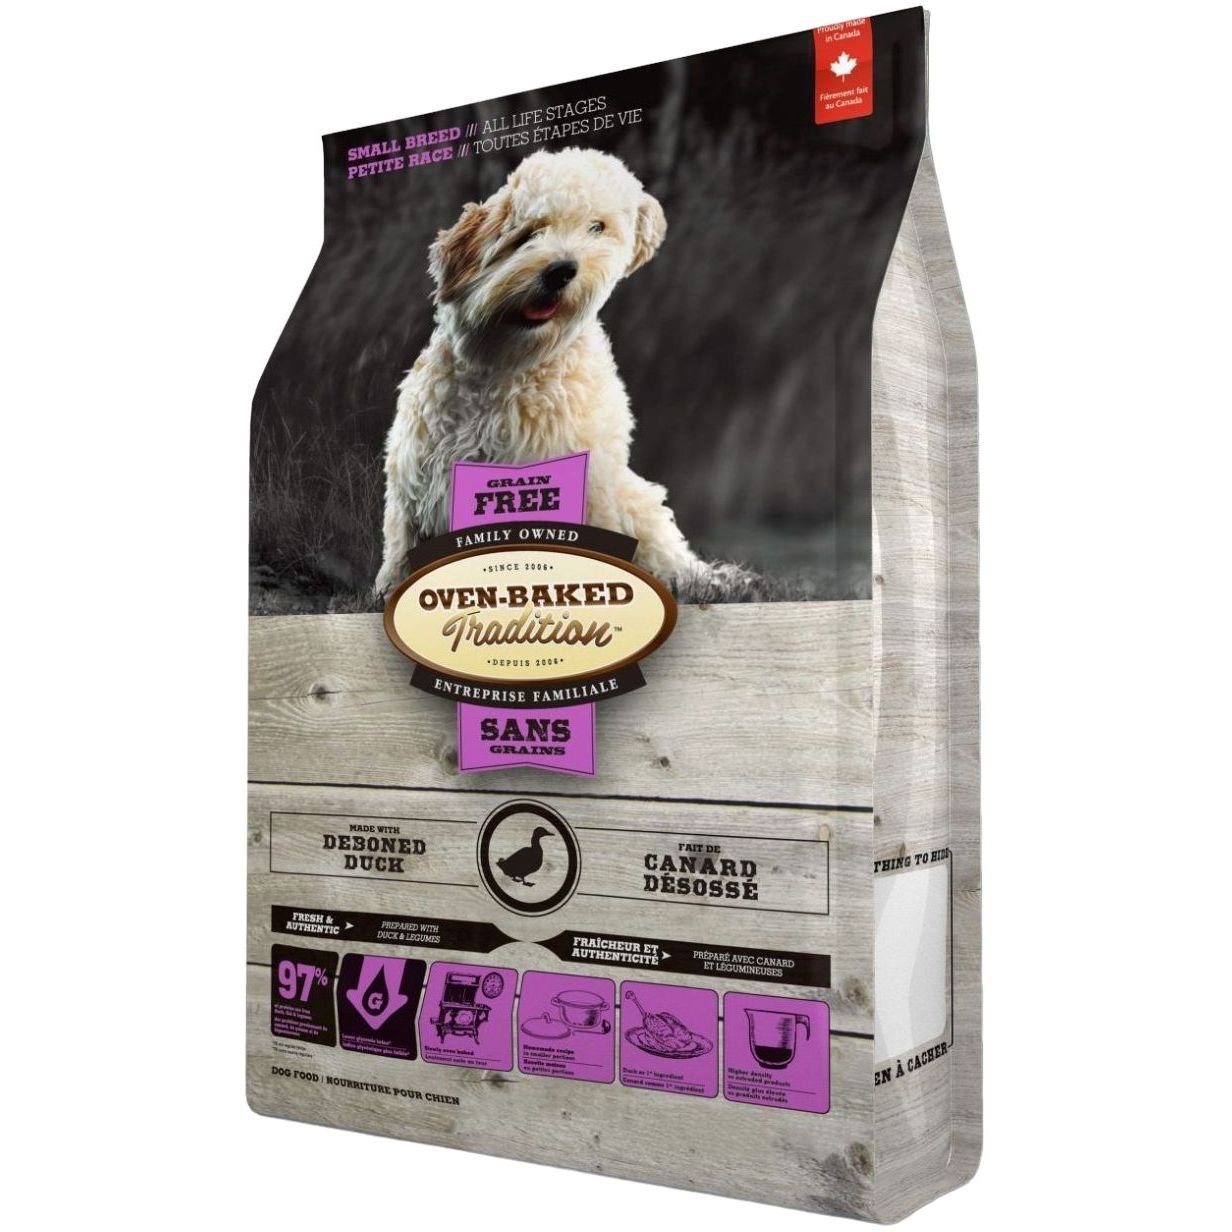 Сухий корм для собак малих порід Oven-Baked Tradition, беззерновий, зі свіжого м'яса качки, 1 кг - фото 1